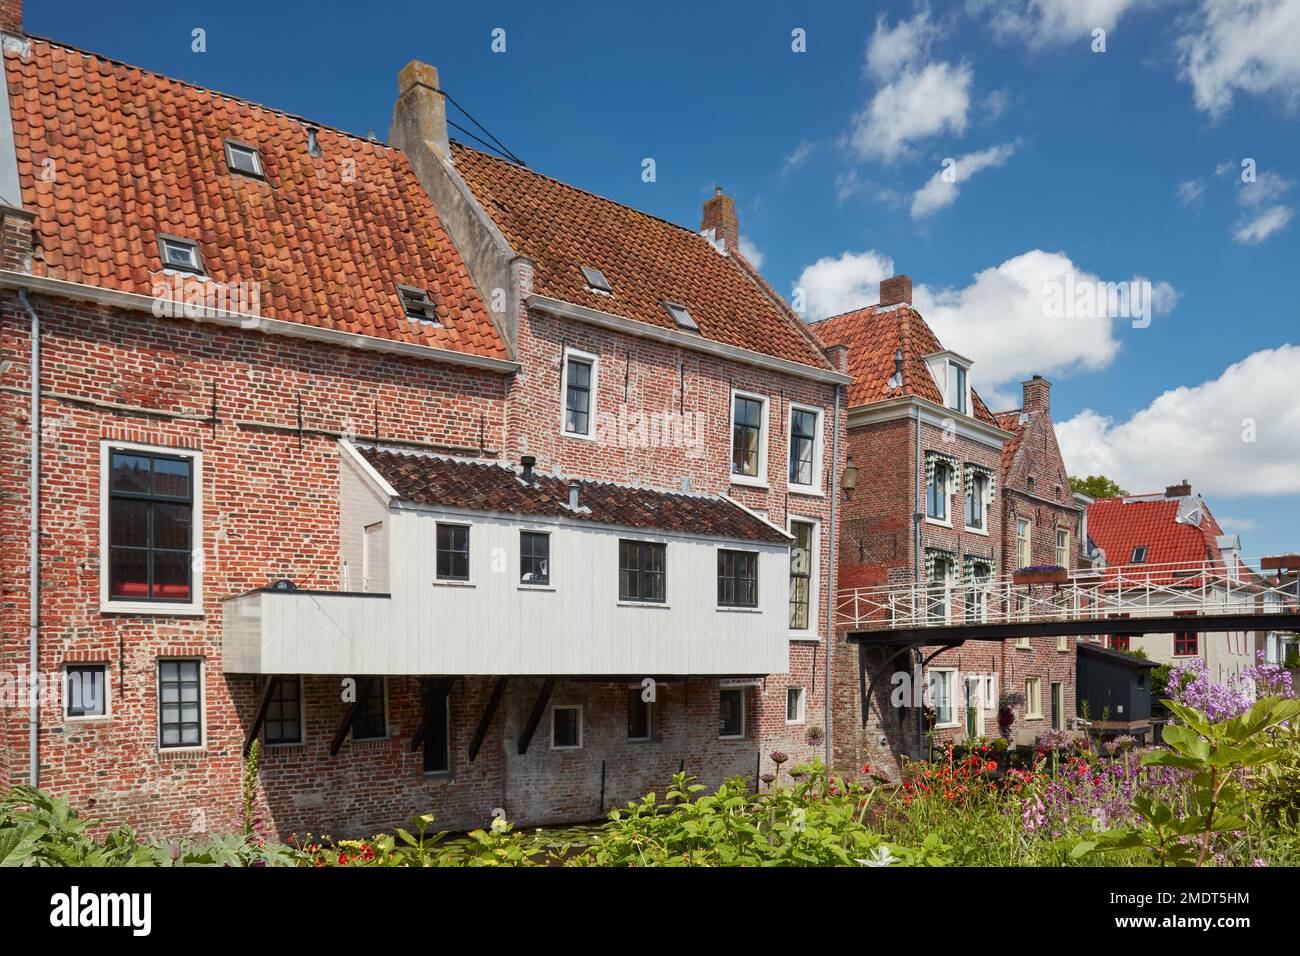 Vue d'été sur les maisons médiévales néerlandaises avec des cuisinettes suspendues au canal de Damsterdiep à Appingedam, Groningen, pays-Bas Banque D'Images